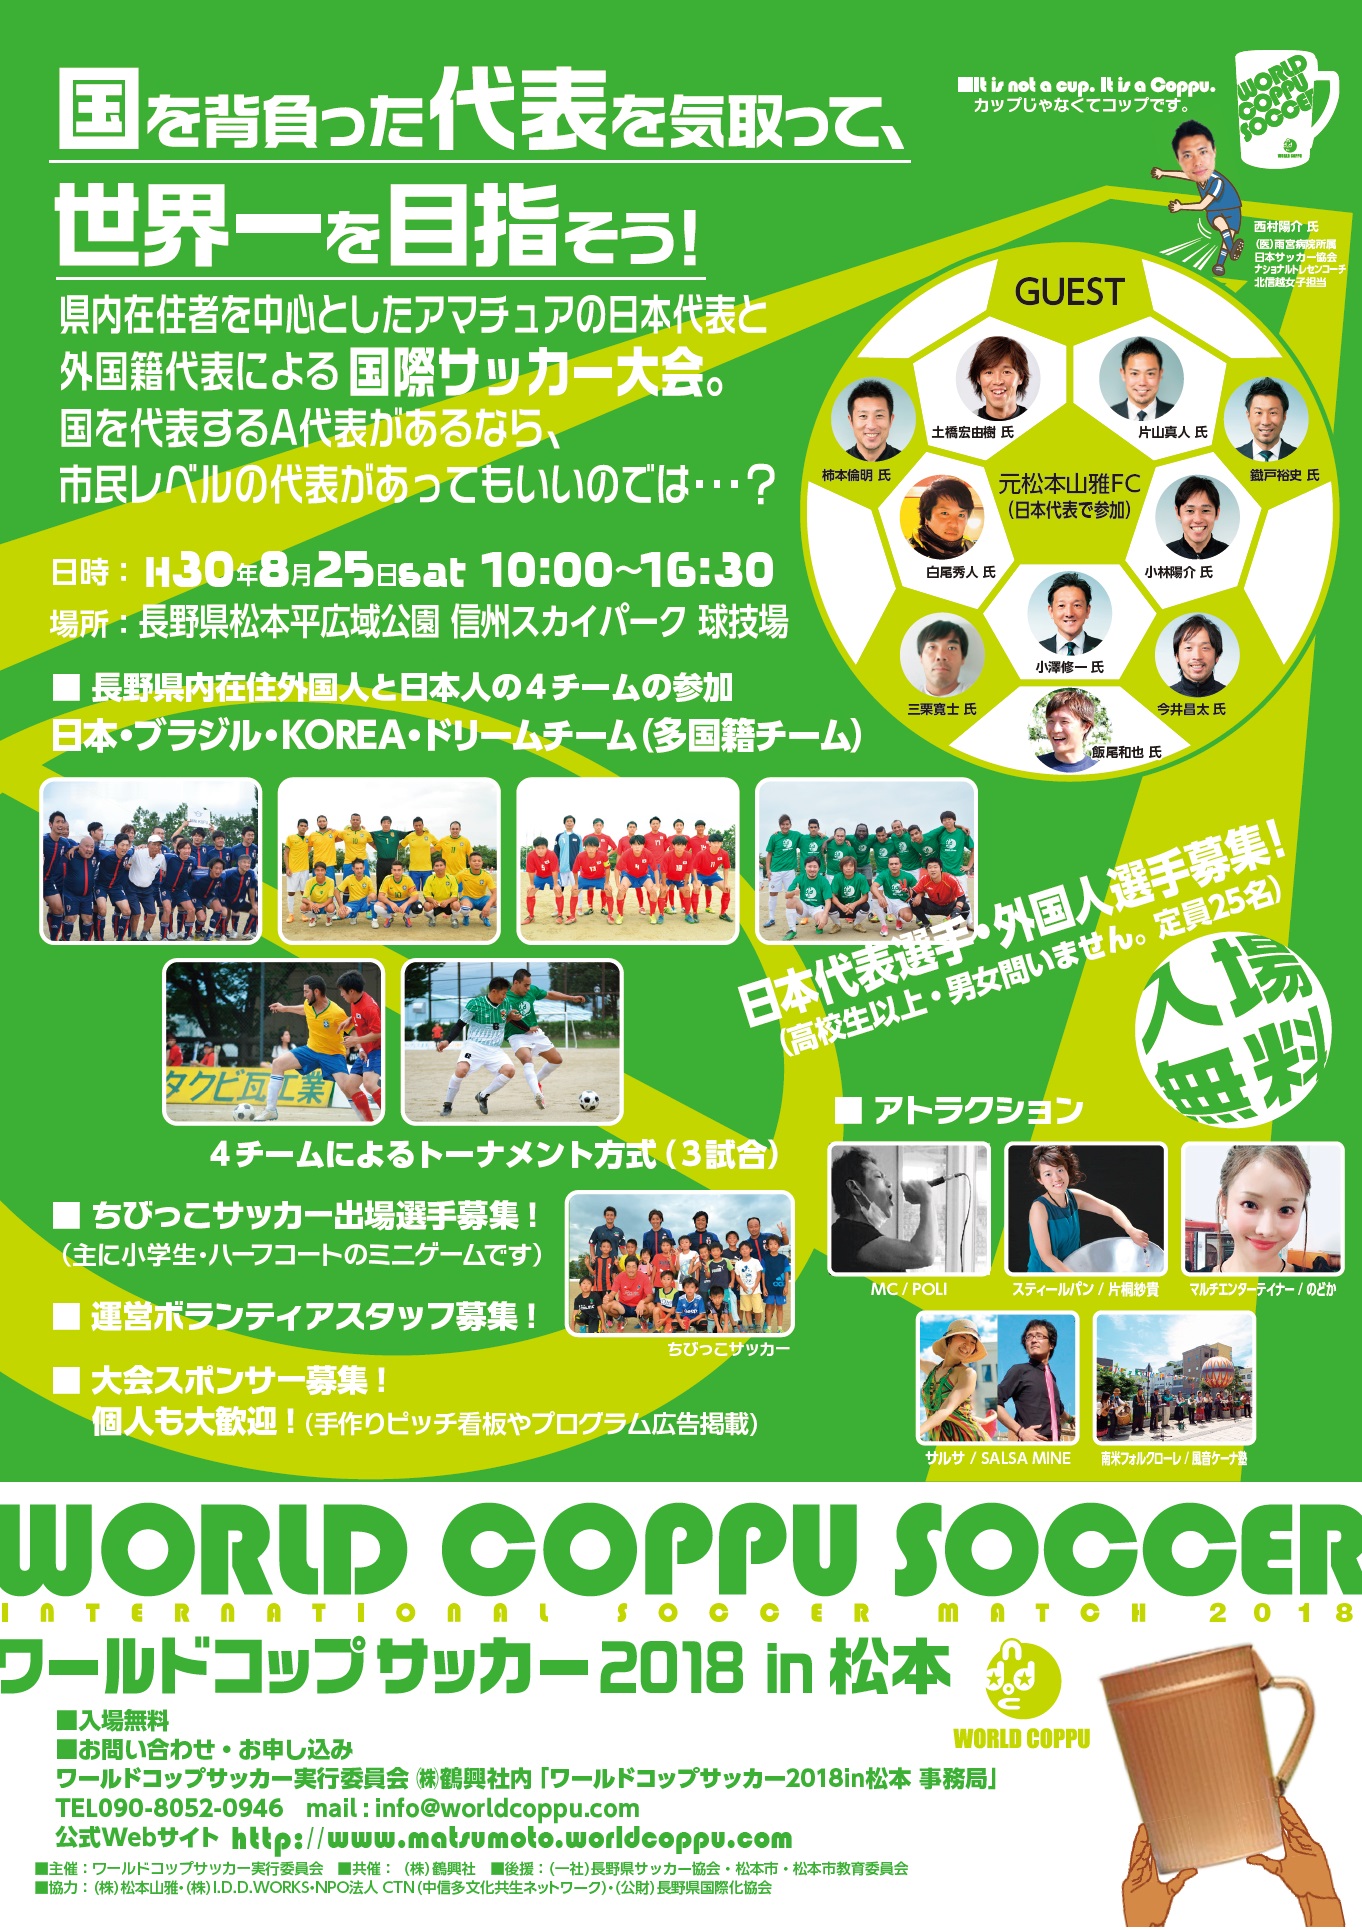 8 25 土 ワールドコップサッカー18 In 松本 に参加します 松本山雅fc